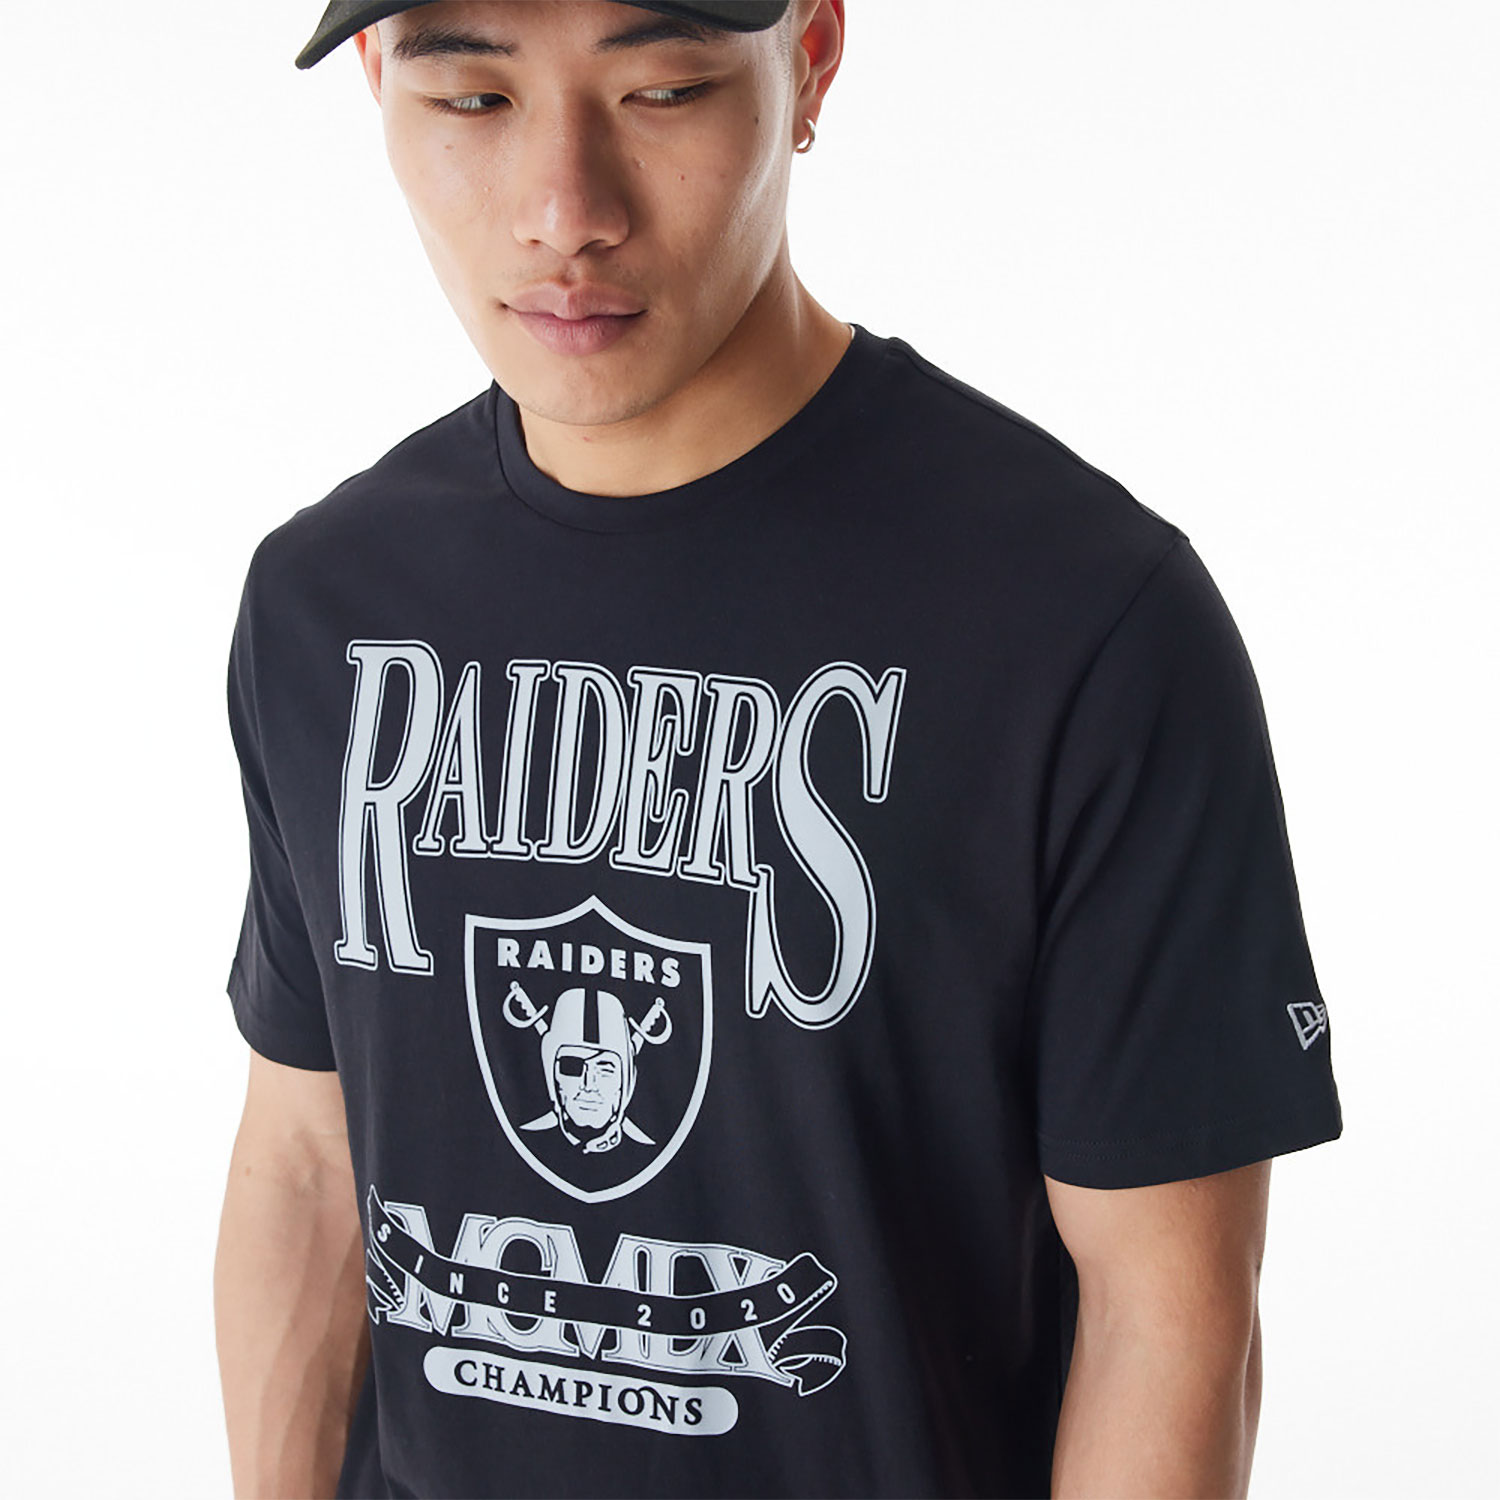 Las Vegas Raiders NFL Champions Graphic Black T-Shirt